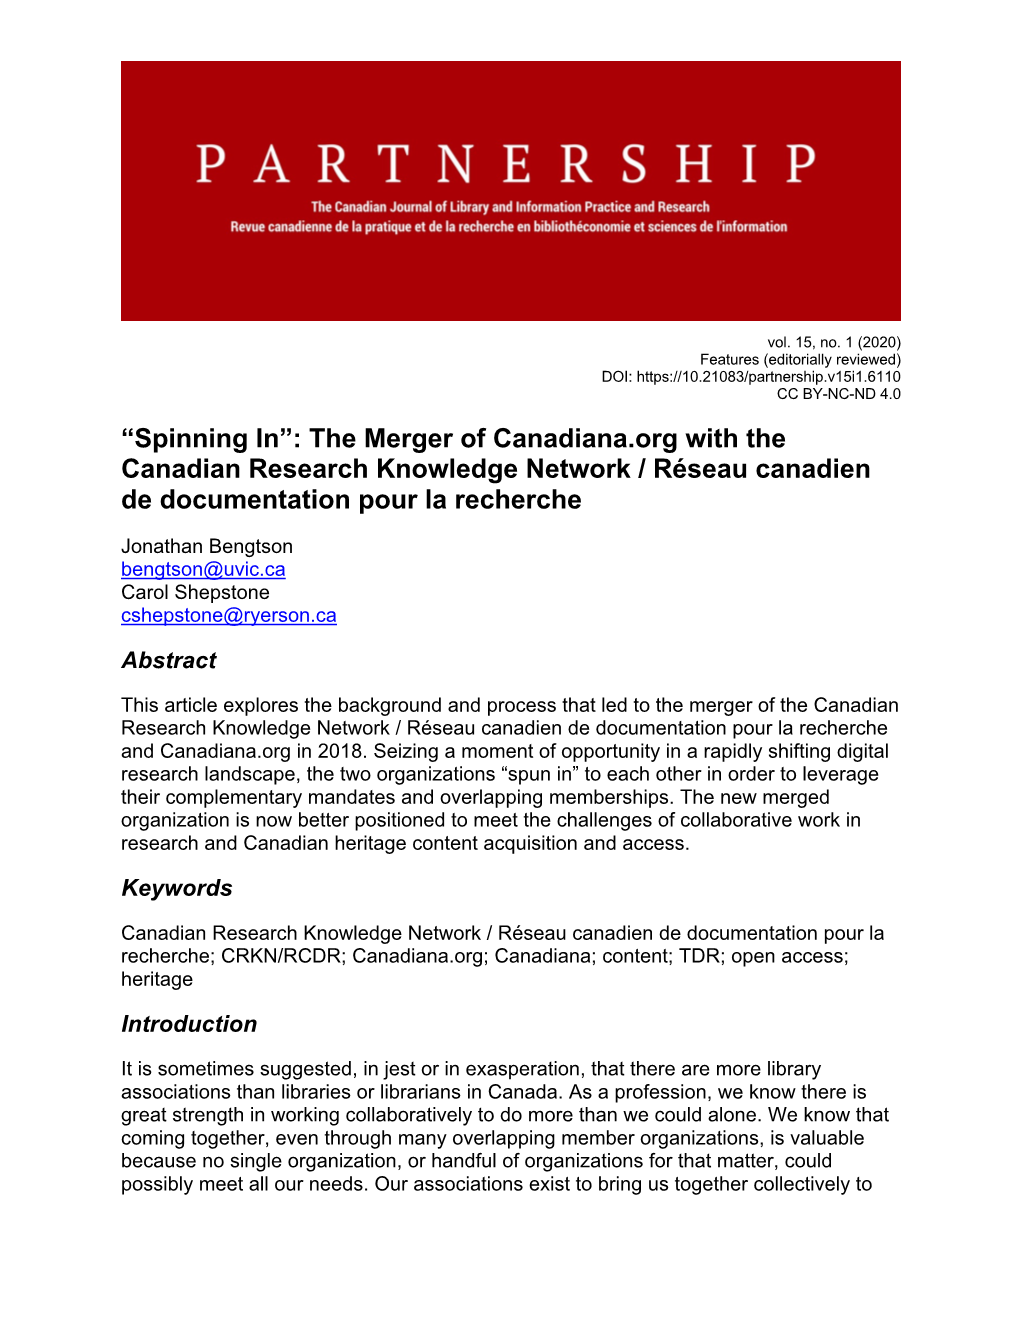 The Merger of Canadiana.Org with the Canadian Research Knowledge Network / Réseau Canadien De Documentation Pour La Recherche